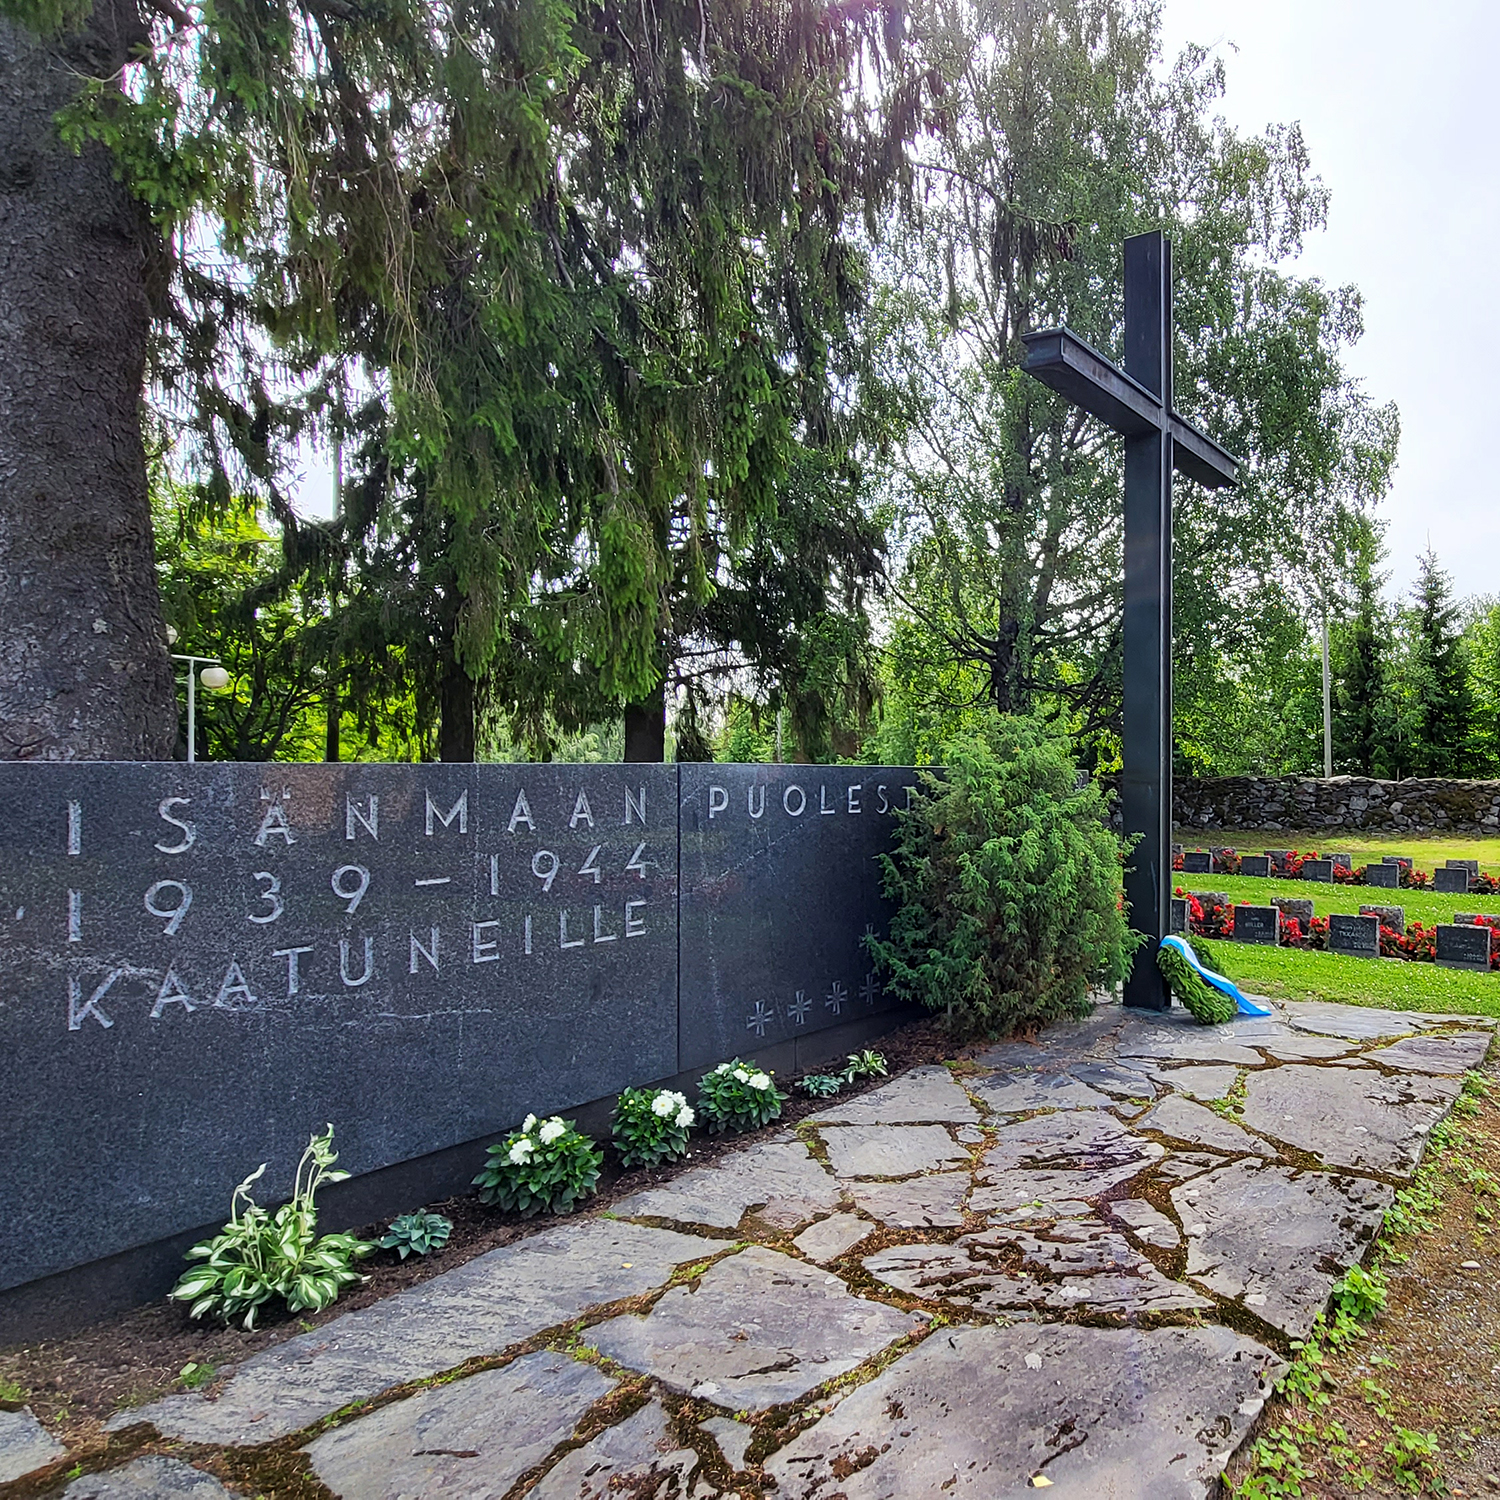 Tumma kivinen paasi, jossa teksti isänmaan puolesta 1939-1944 kaatuneille ja risti.